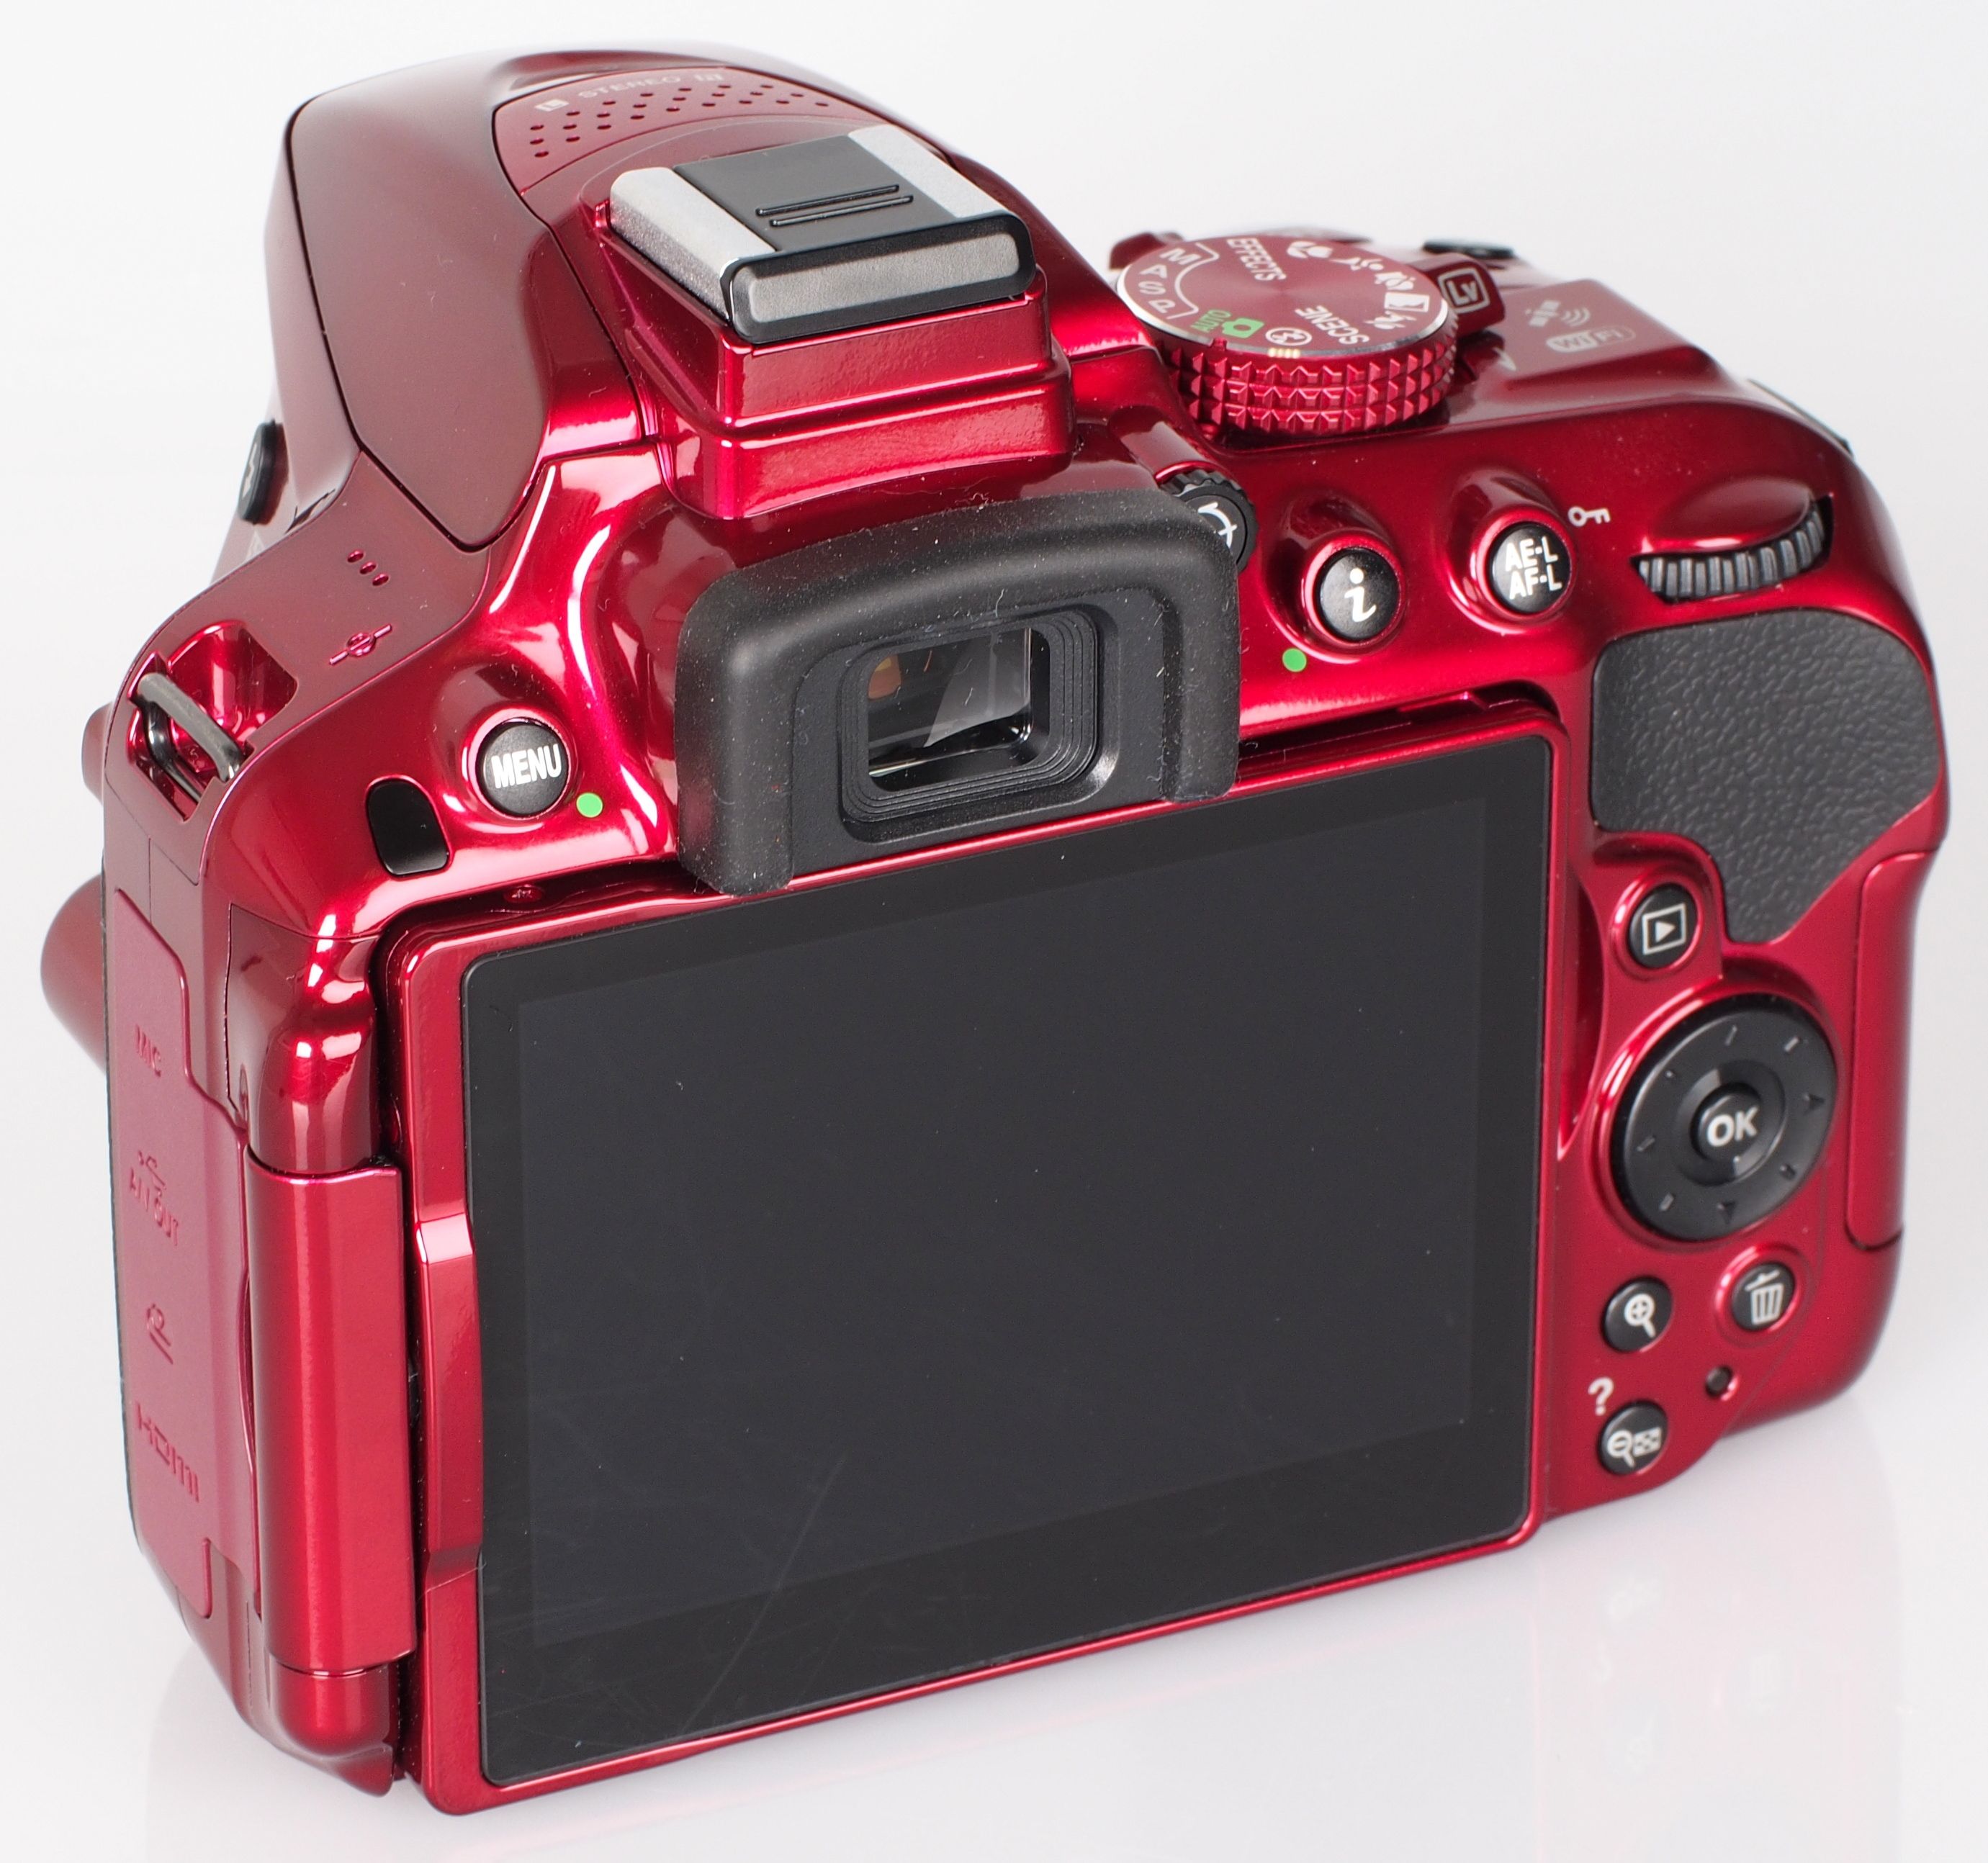 Revisión de Nikon D5300: Revisión de fotografía digital